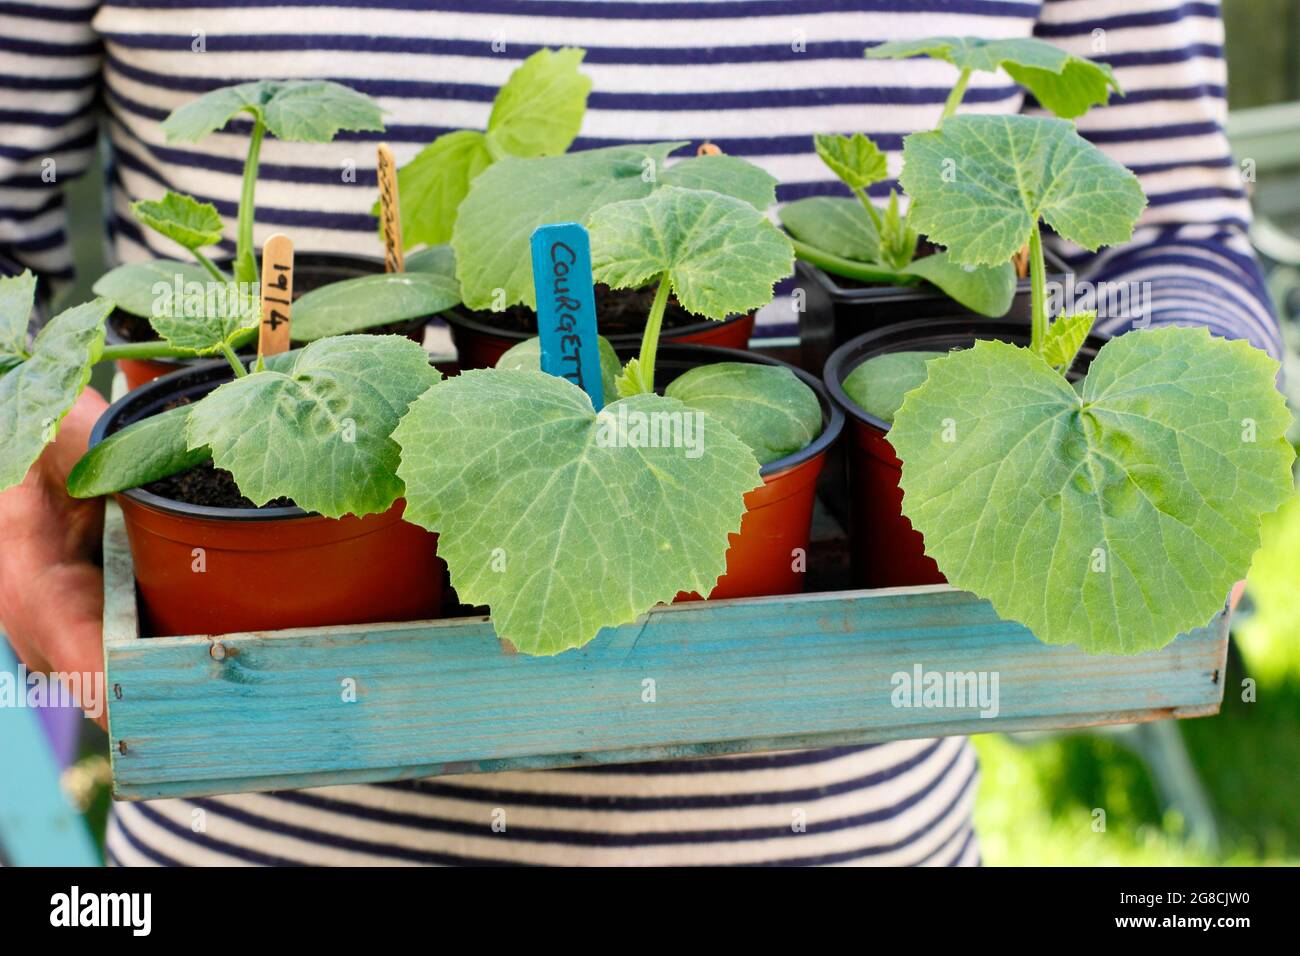 Piantine di zucchine, iniziate in pentole, pronte per piantare fuori dal coltivatore. Cucurbita pepo 'defender'. Foto Stock